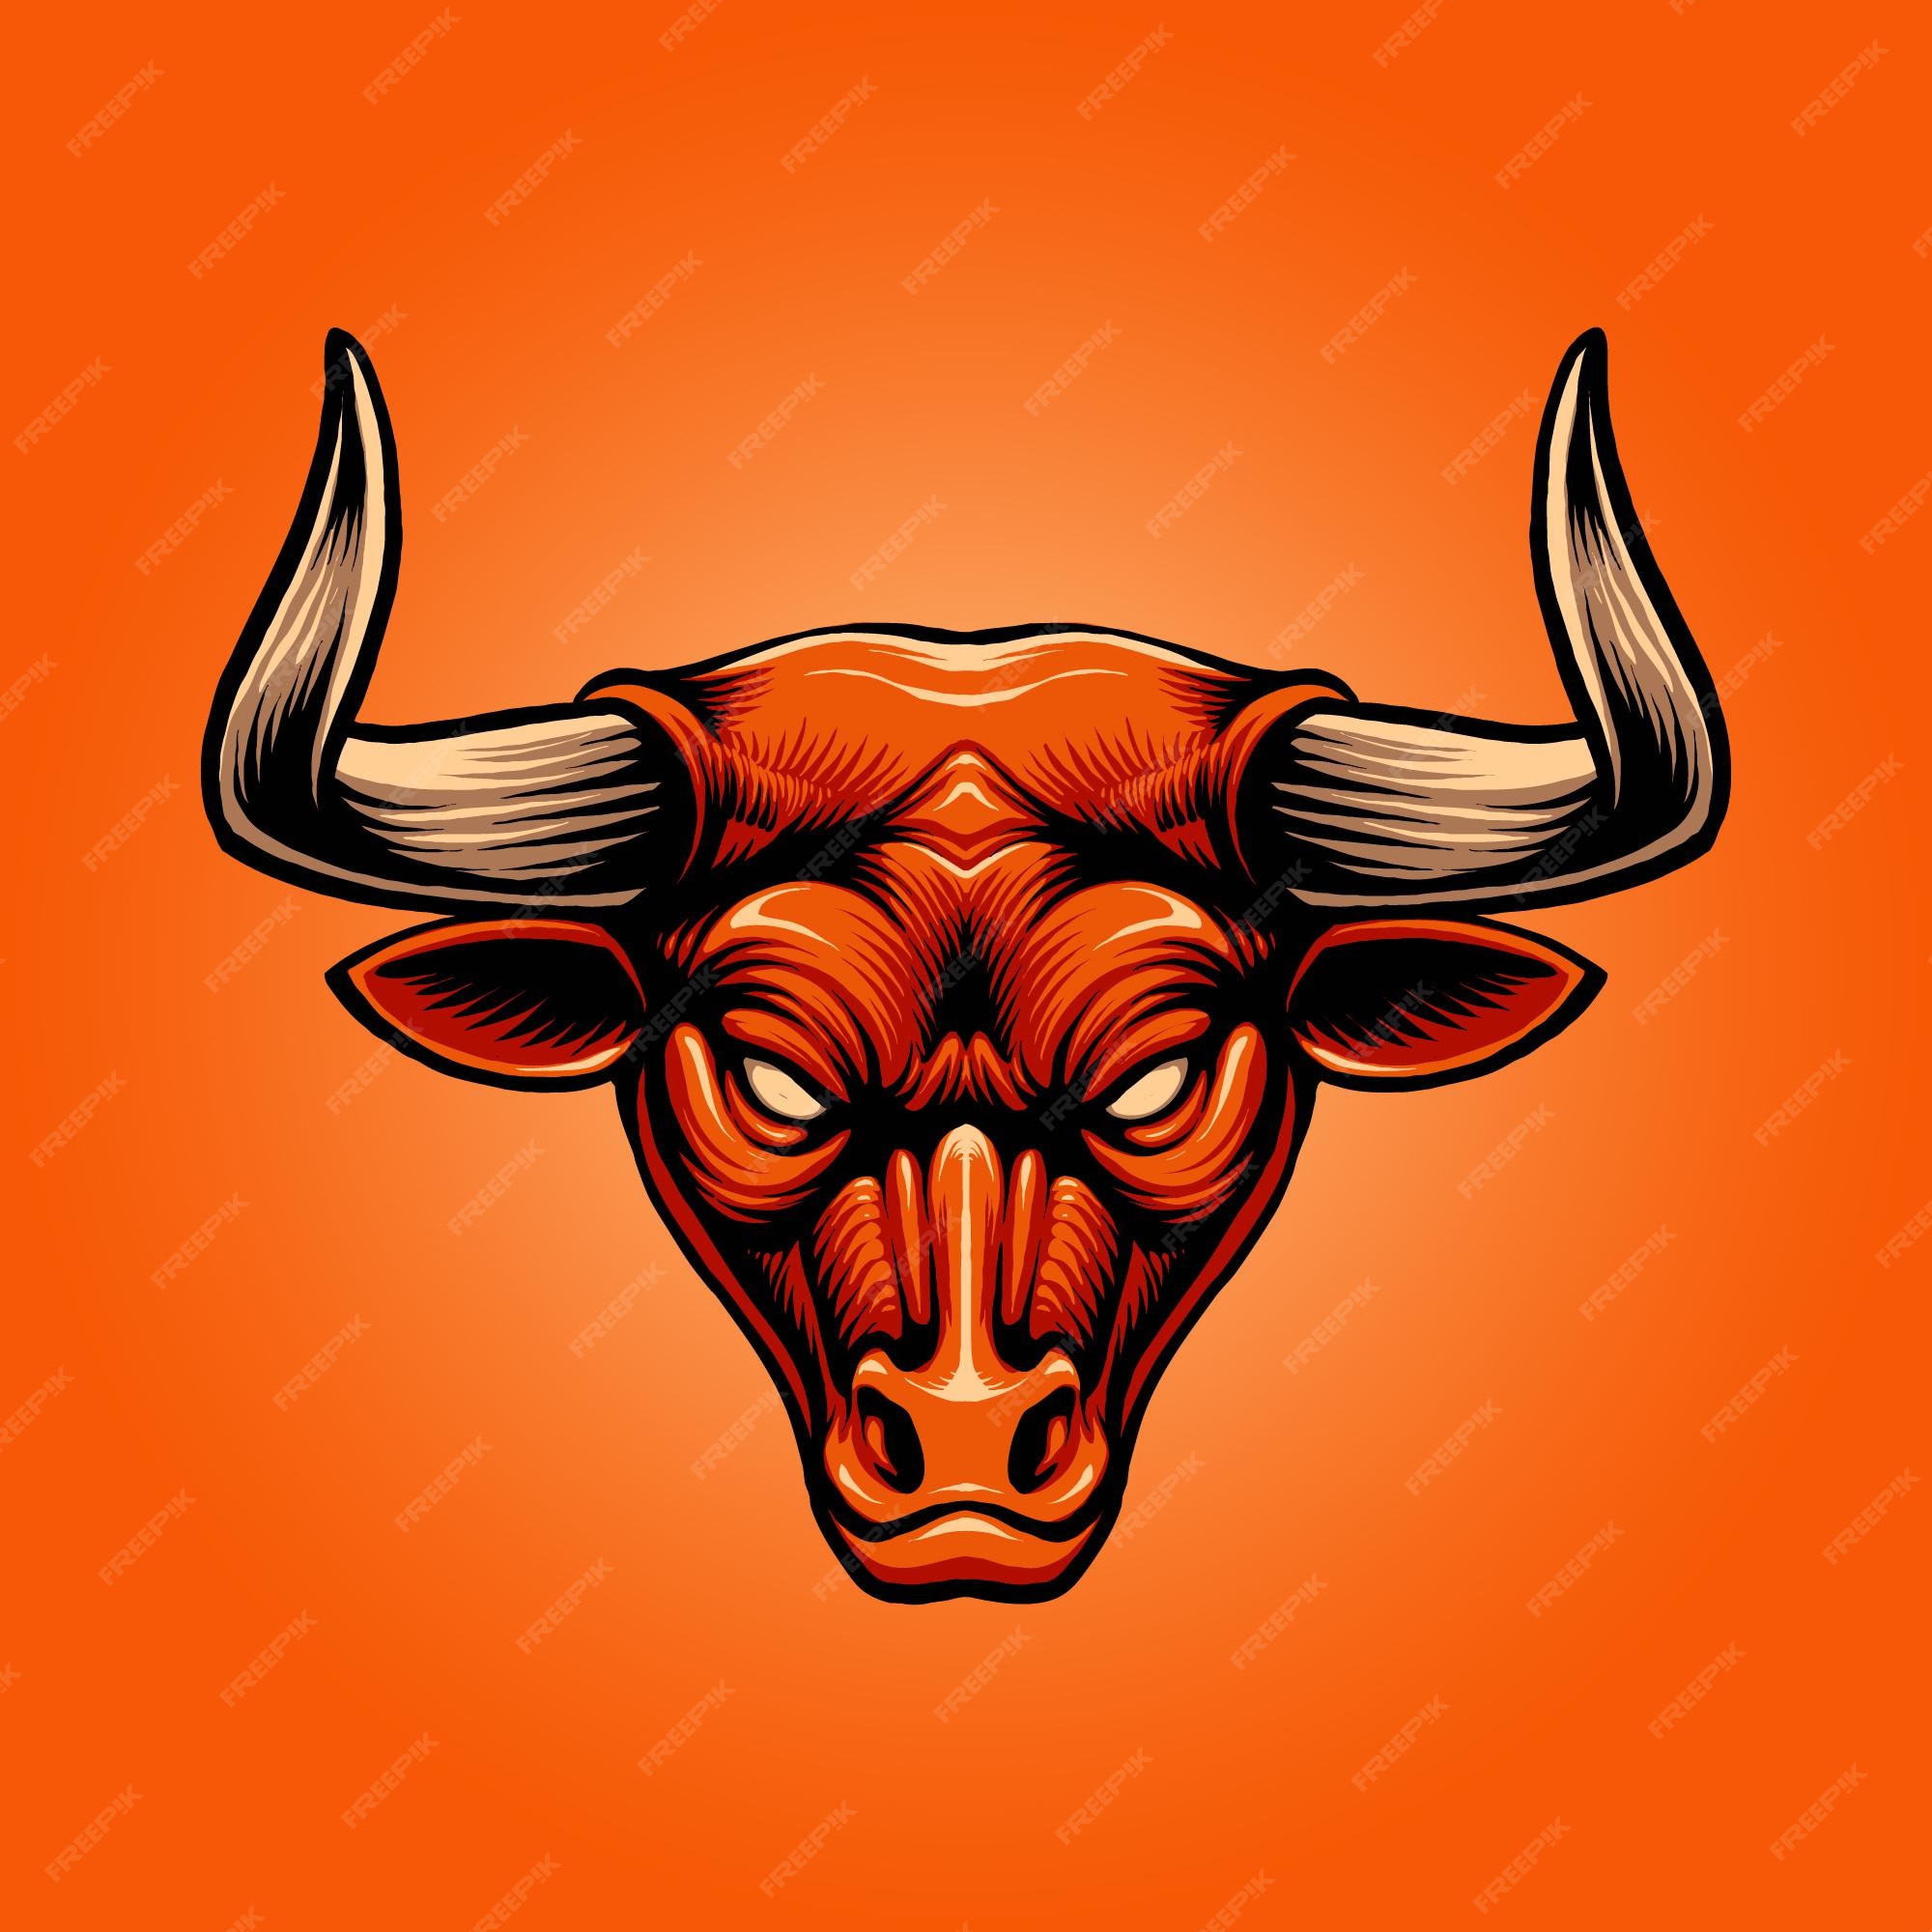 nakke spids smugling Premium Vector | The red bull head illustration